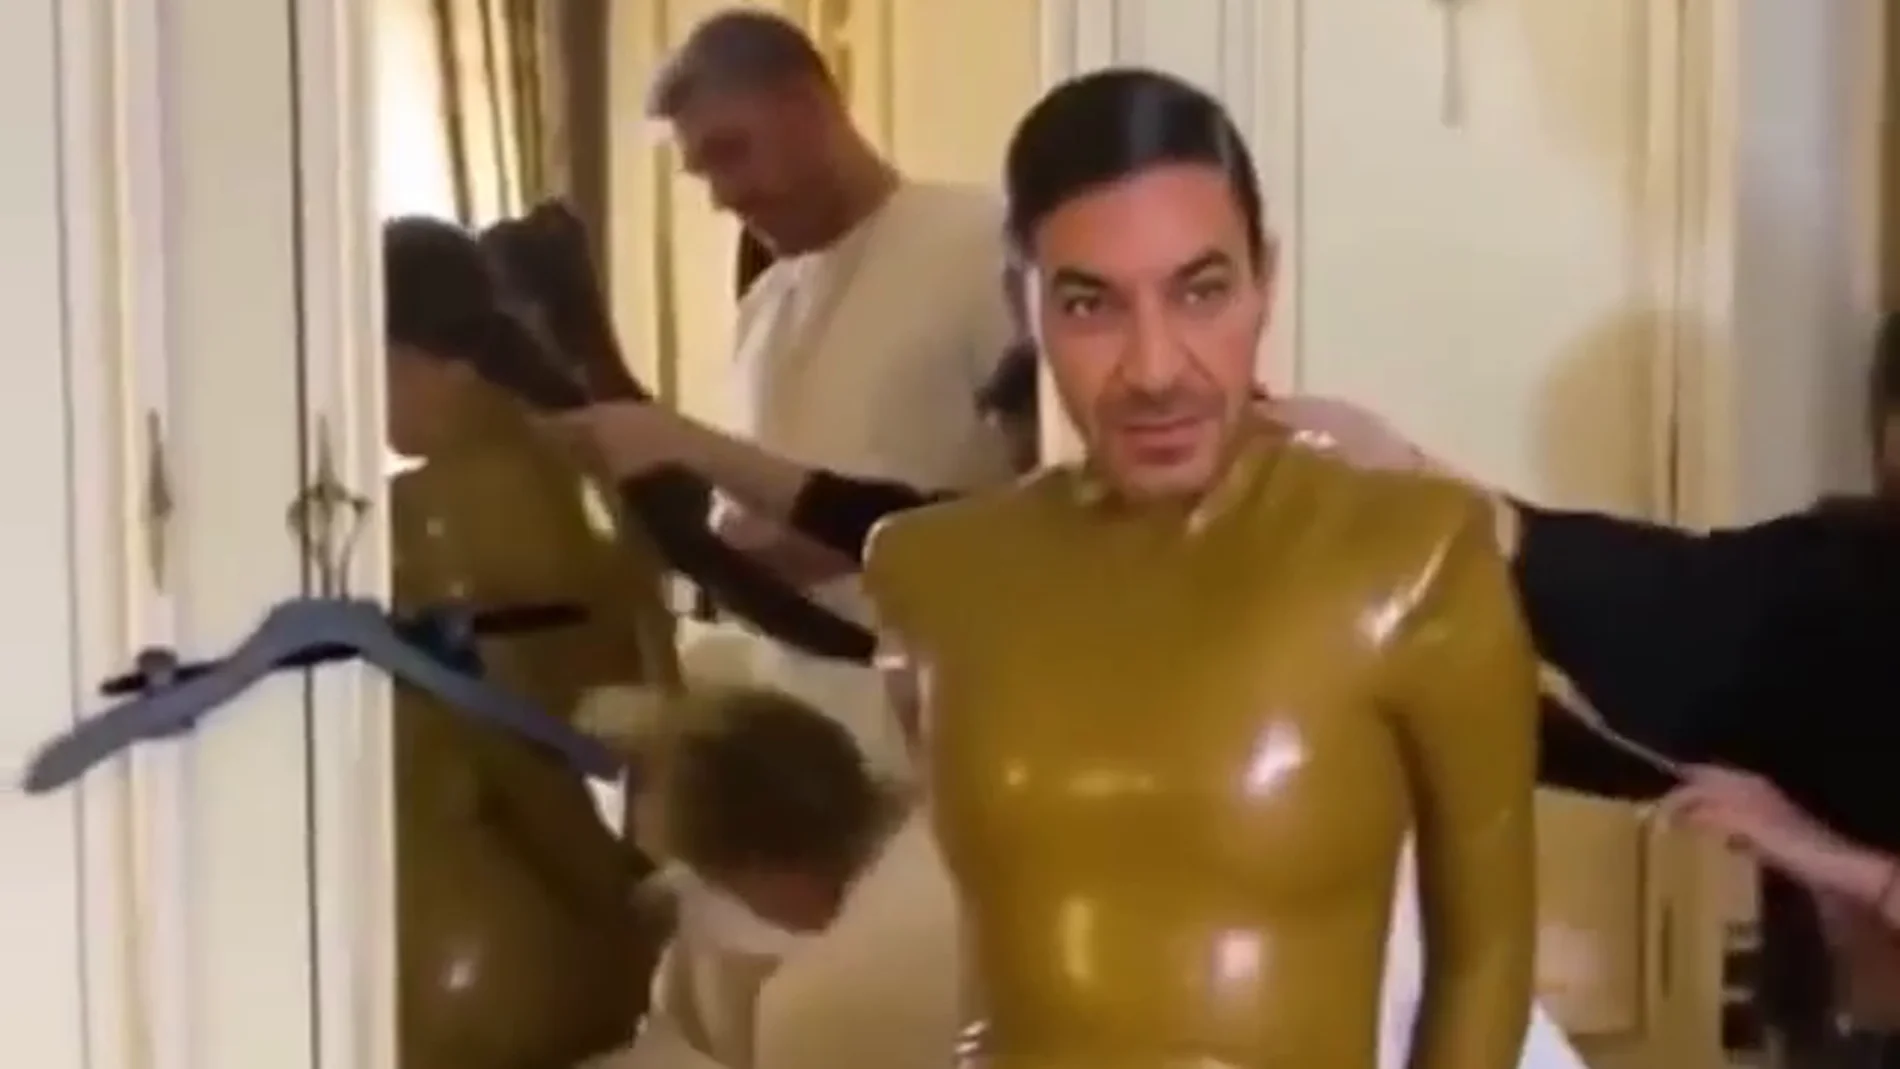 El hilarante vídeo viral de Arturo Valls convertido en Kim Kardashian